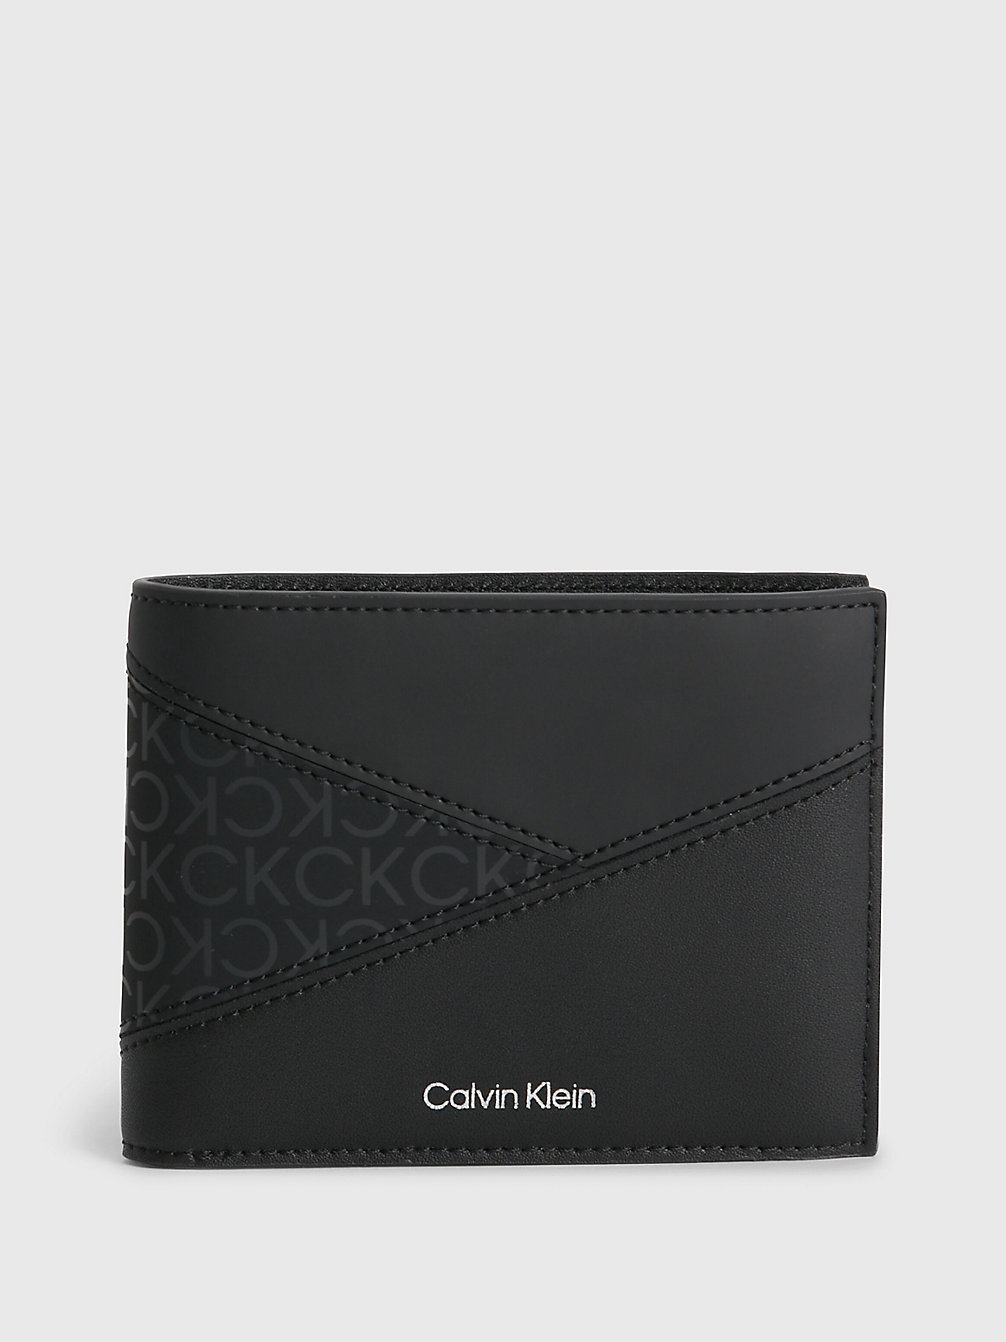 CK BLACK > Rfid-Portemonnaie Aus Recyceltem Material > undefined Herren - Calvin Klein